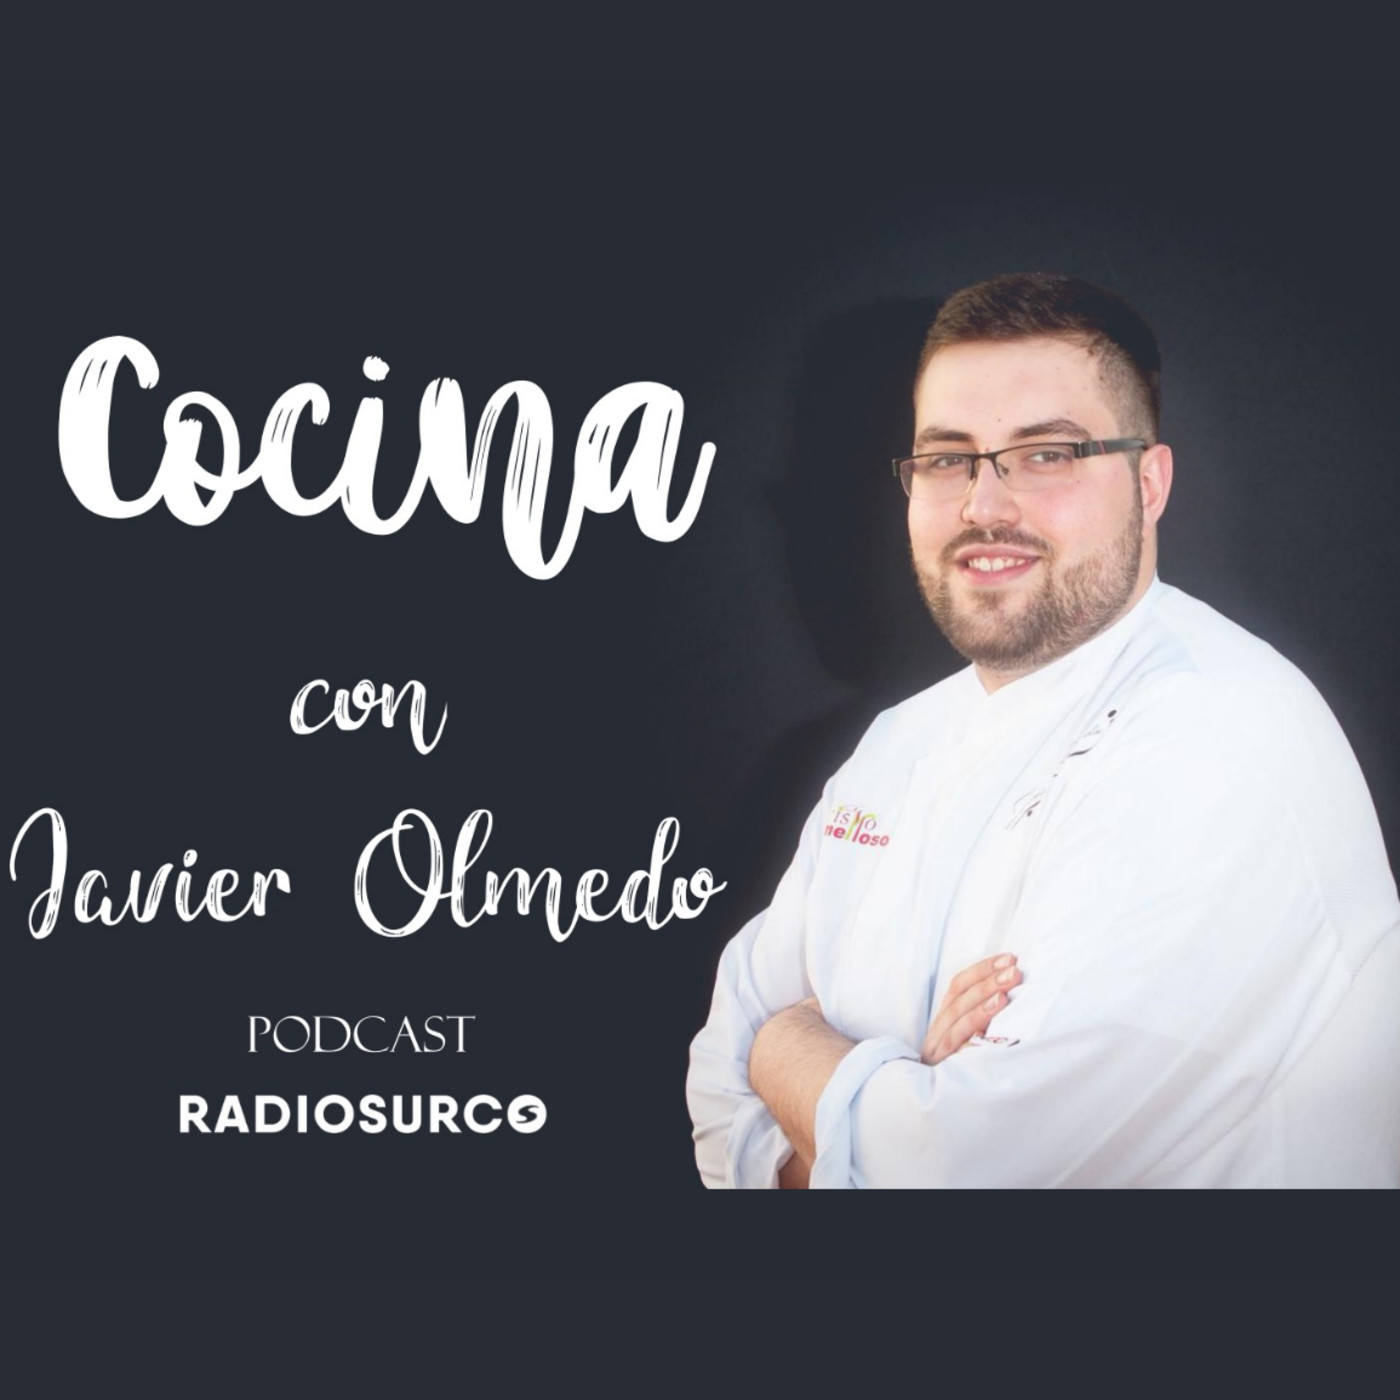 Cocina con Javier Olmedo